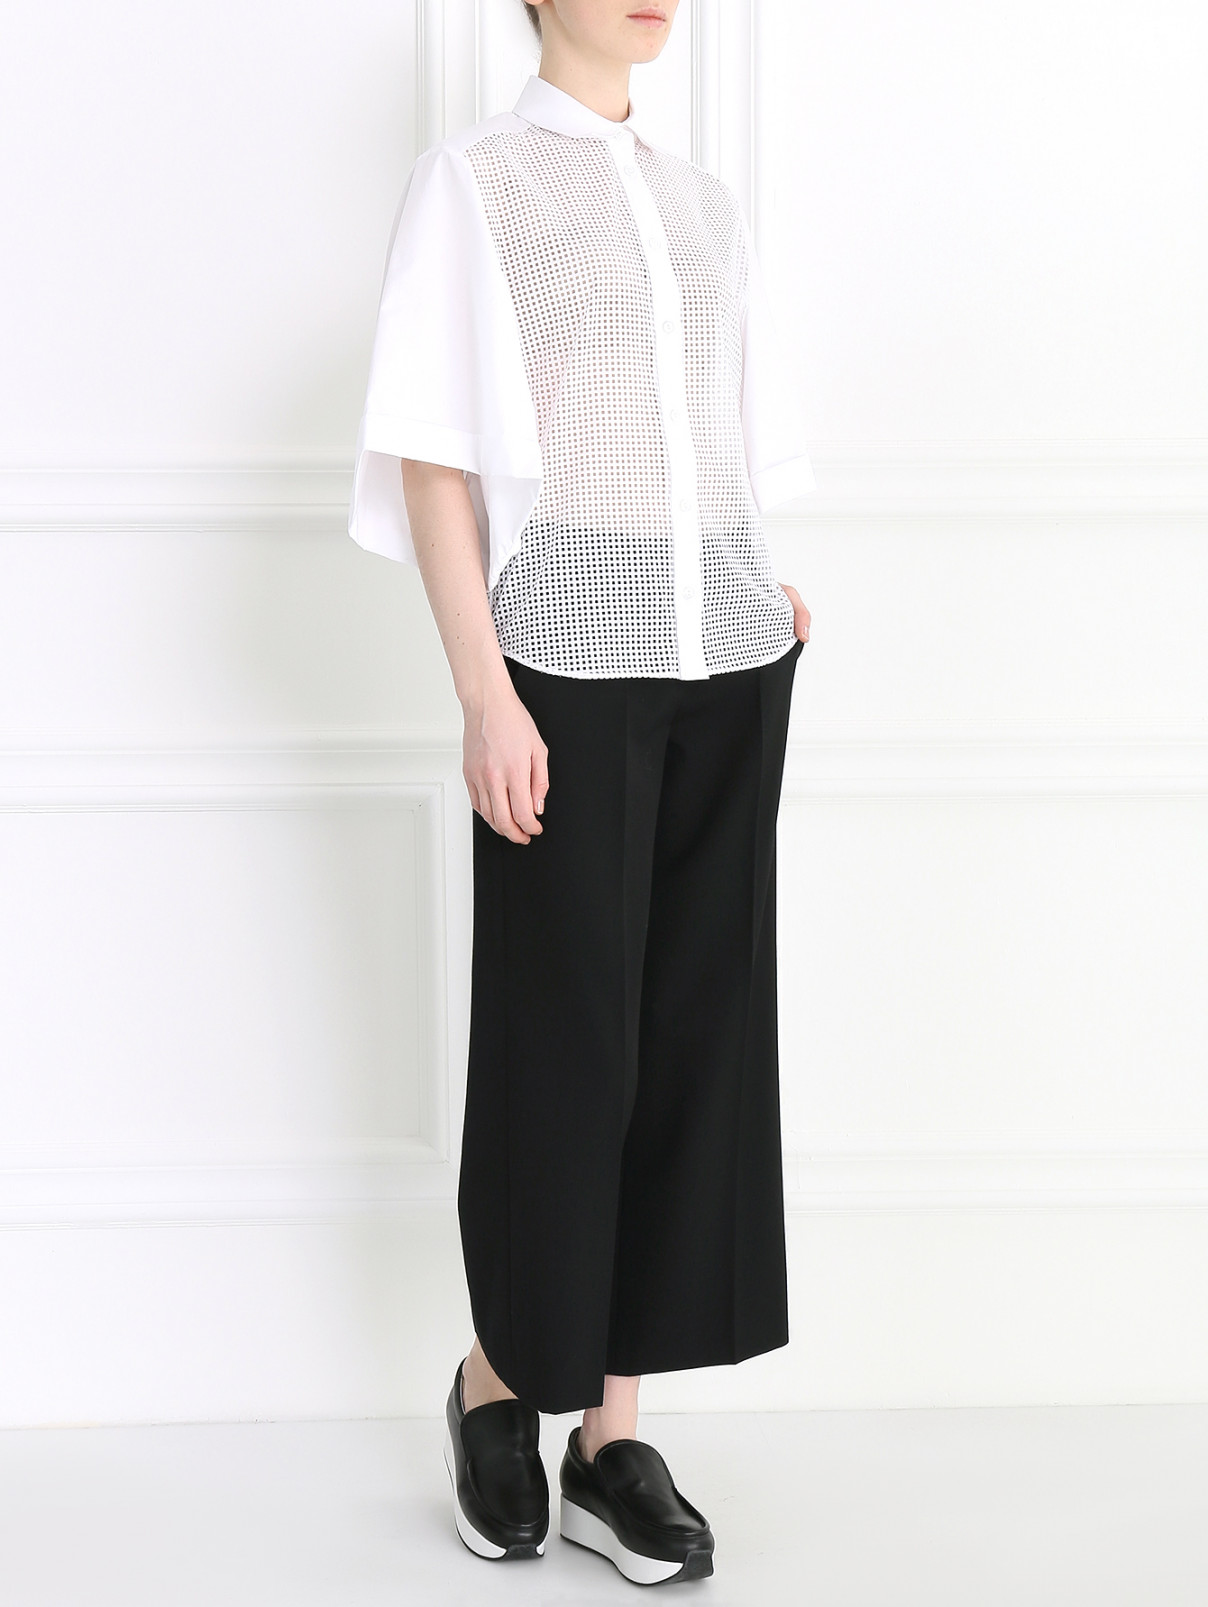 Блуза из хлопка с перфорацией Veronique Branquinho  –  Модель Общий вид  – Цвет:  Белый